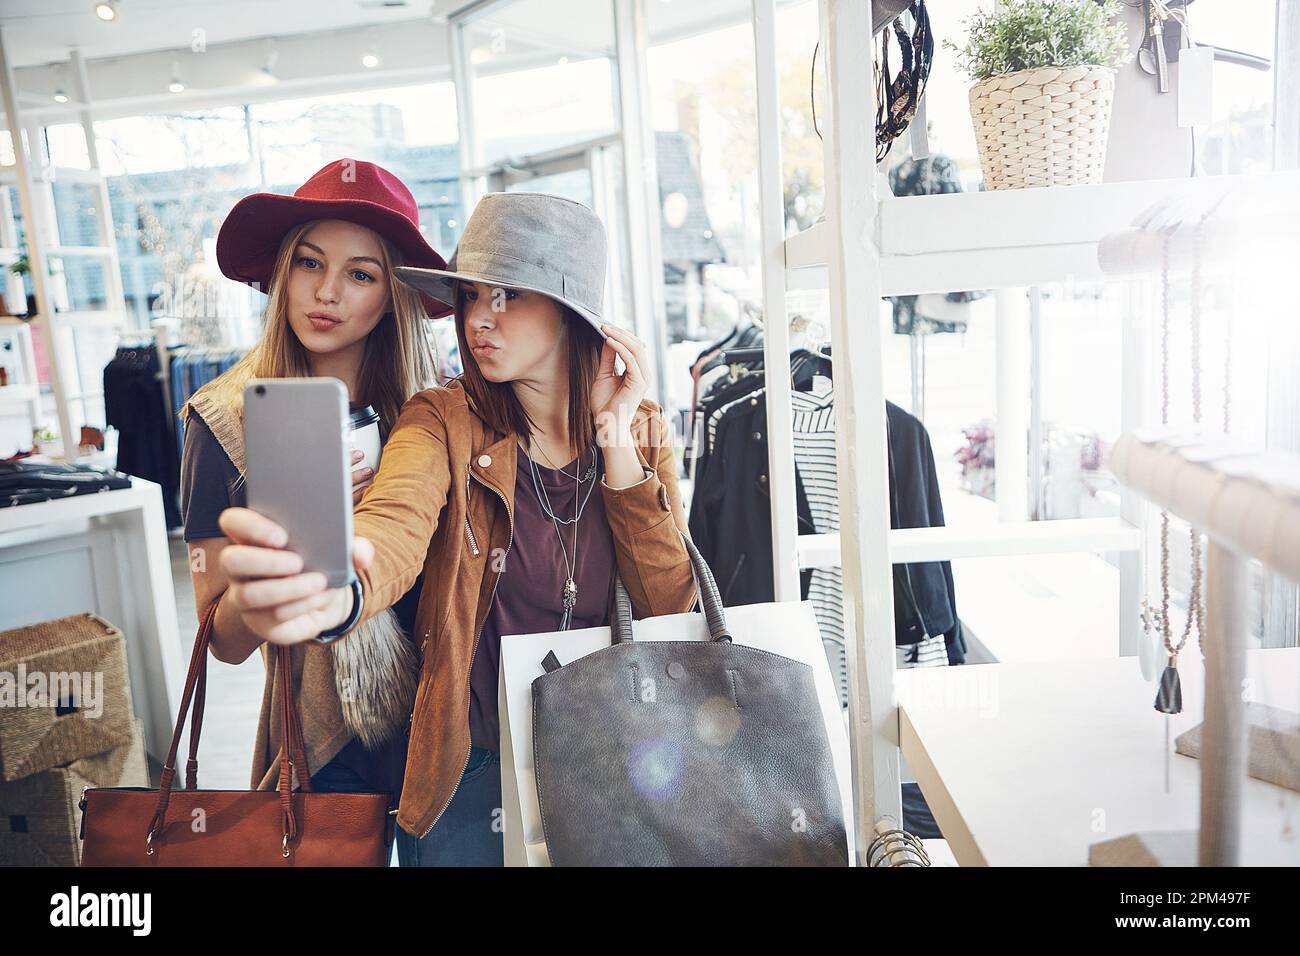 Fai shopping fino al prossimo selfie. due giovani fidanzate scattano selfie mentre si è in giro per lo shopping. Foto Stock